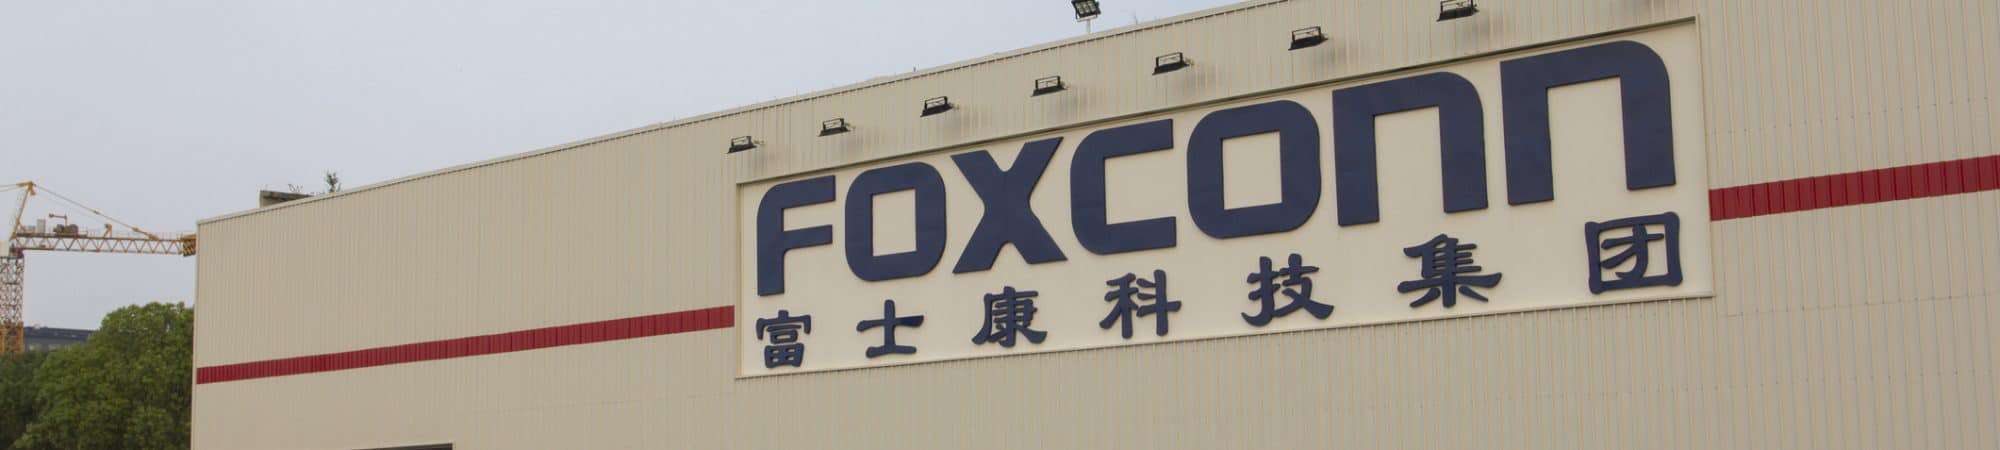 Foxconn Shanghai Facility